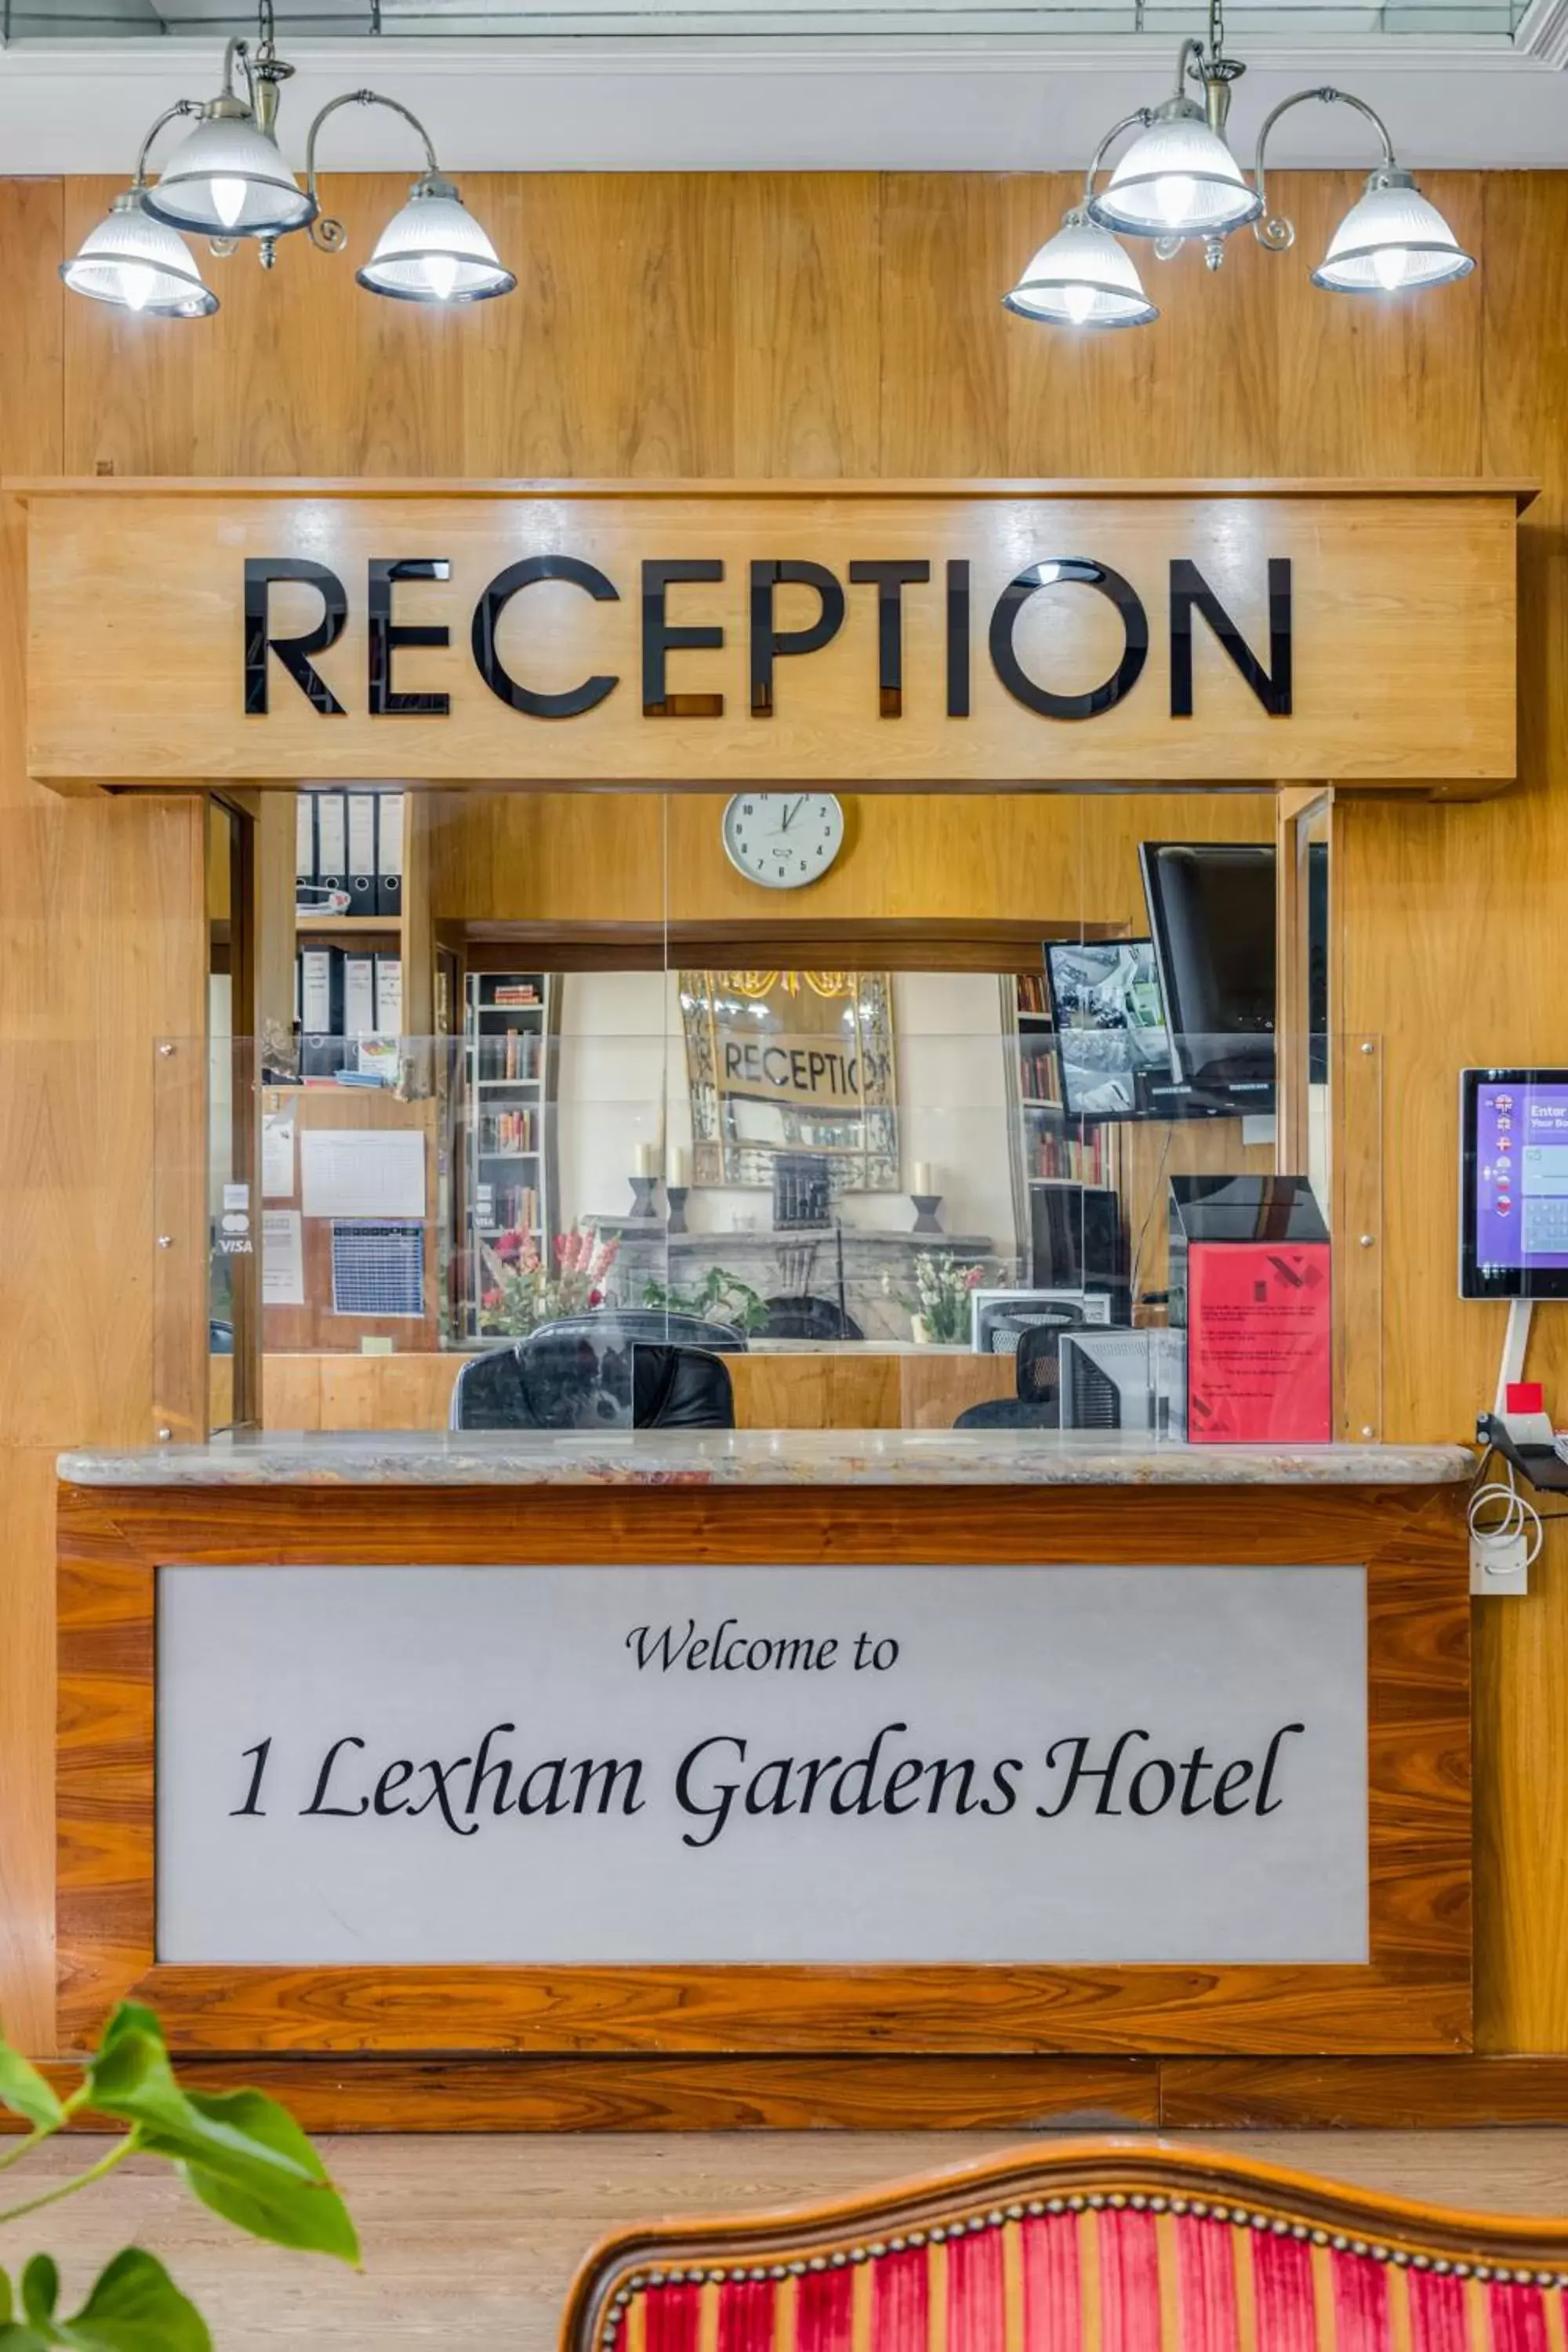 Lobby or reception in 1 Lexham Gardens Hotel